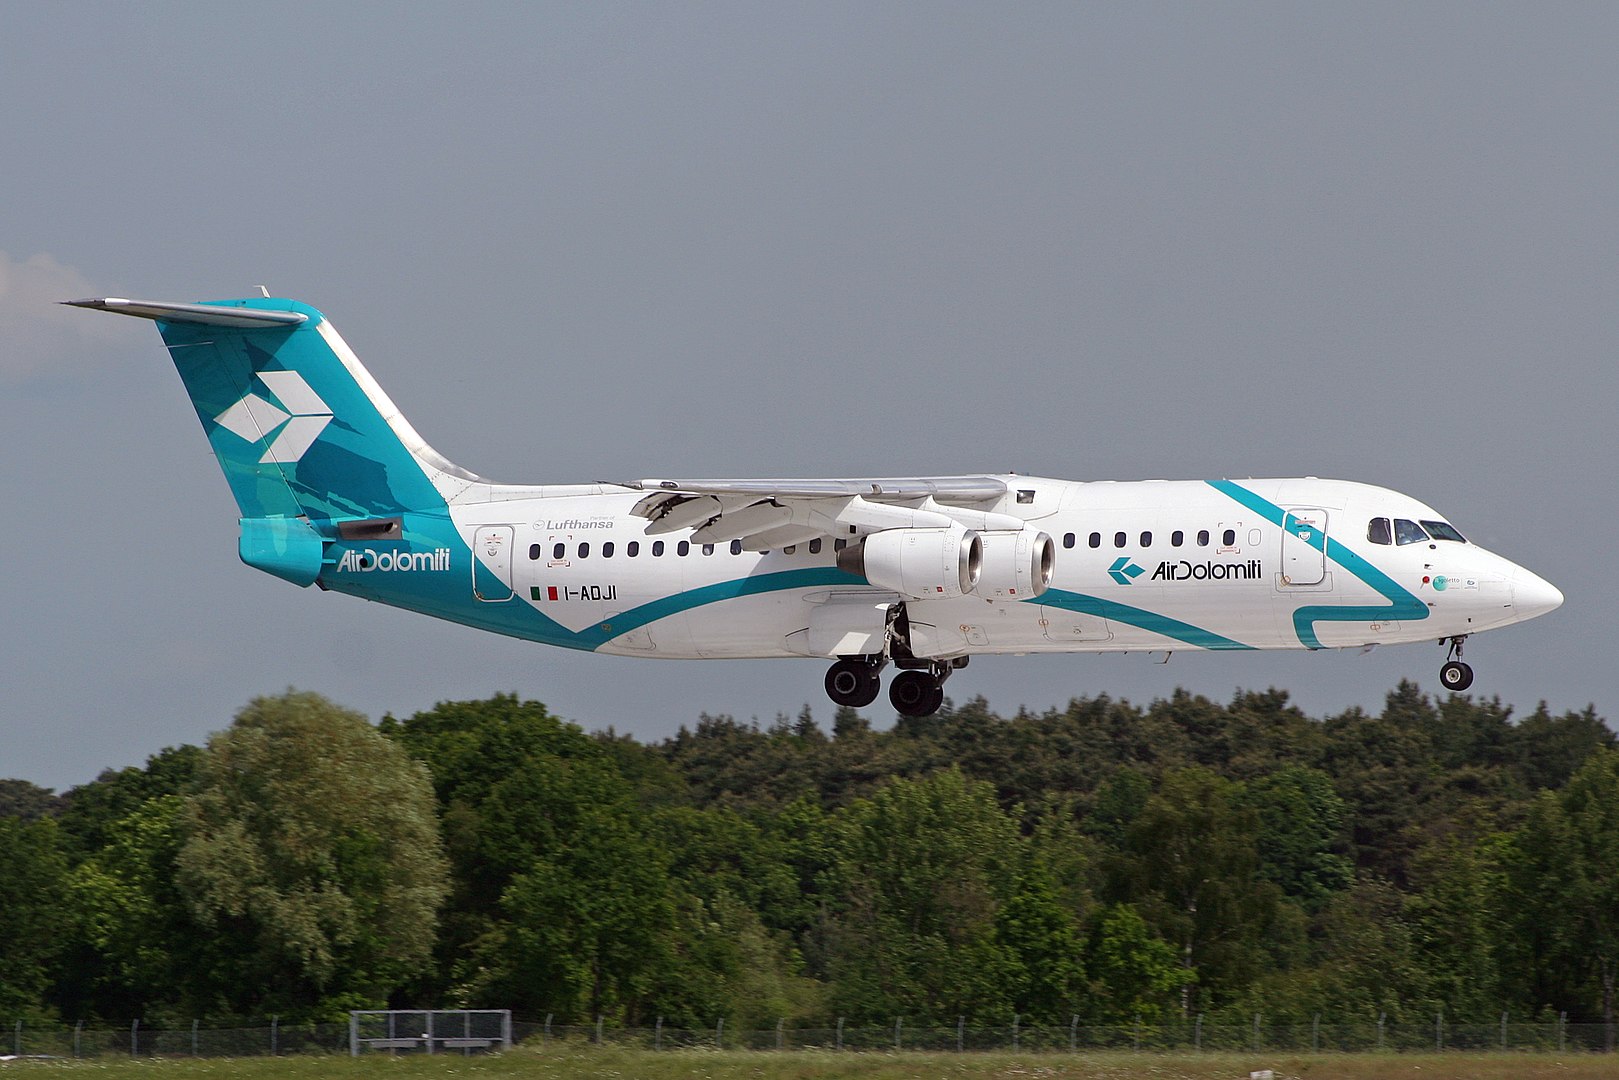 Cette image représente un avion Air Dolomiti qui a été retardé et dont les passagers se demandent s'il peuvent obtenir une indemnisation.